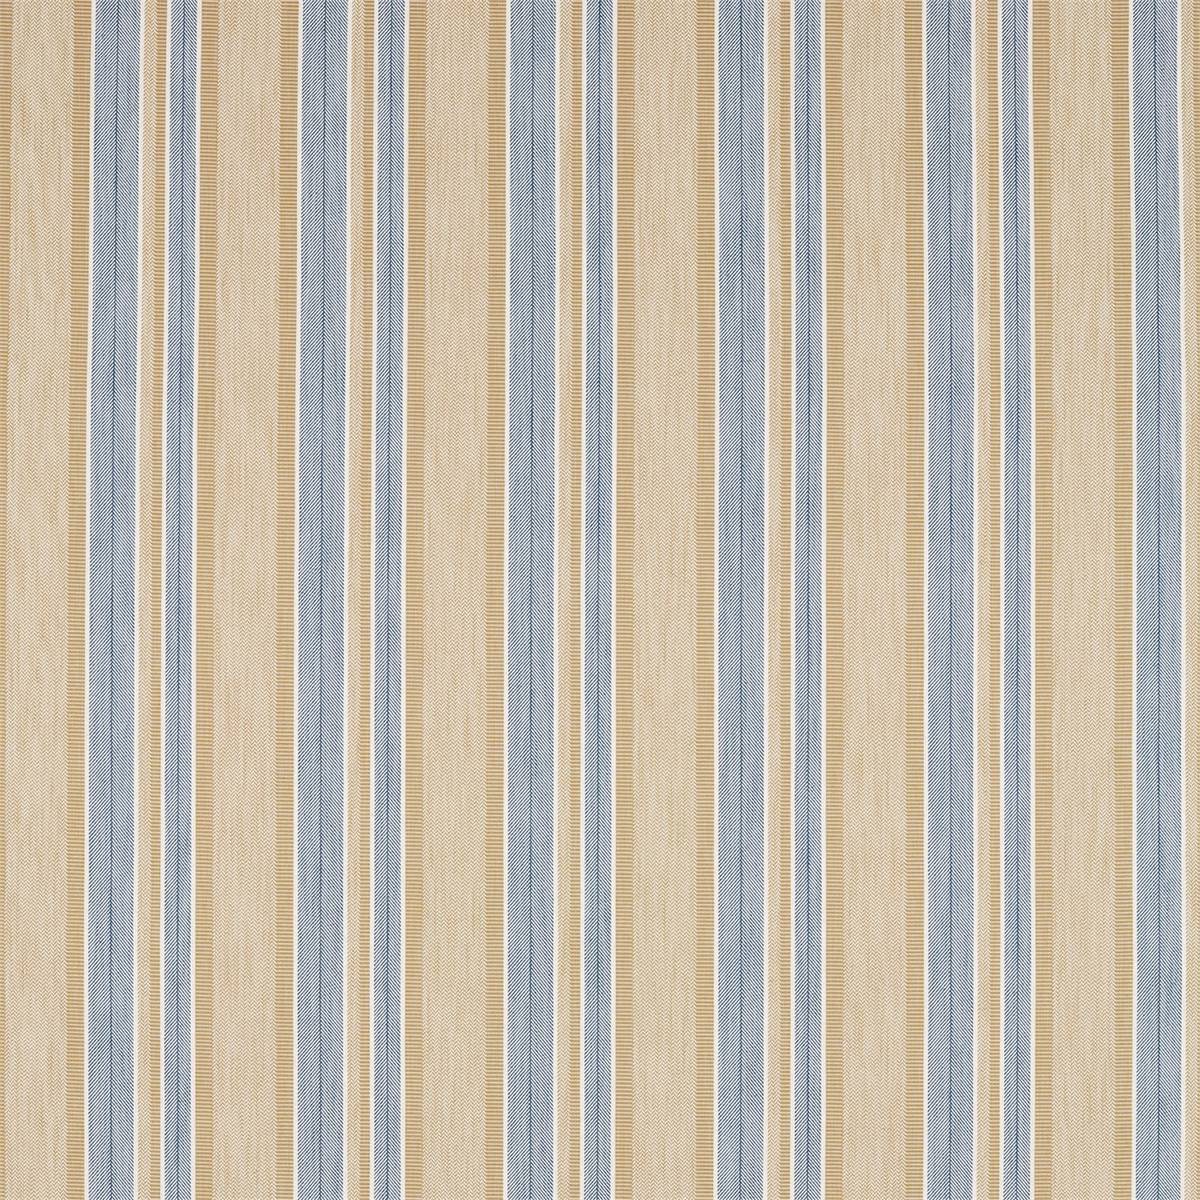 Alcott Denim/Barley Fabric by Sanderson